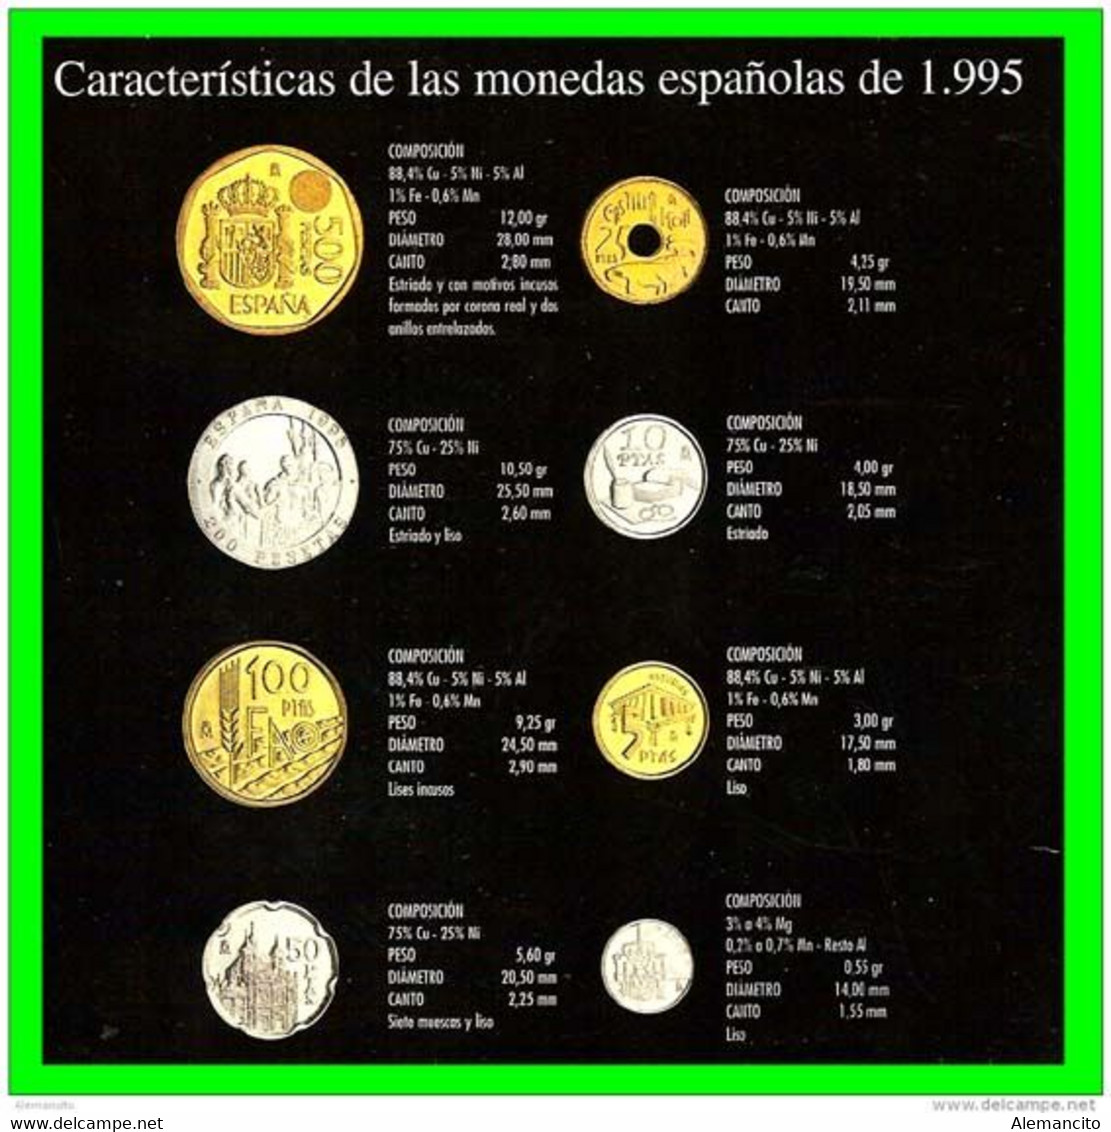 ESPAÑA CARACTERÍSTICAS CARTERA OFICIAL DE ESPAÑA 1995 FNMT. COLECCION DE 8 MONEDAS CALIDAD PROOF DE CURSO LEGAL, - Münz- Und Jahressets